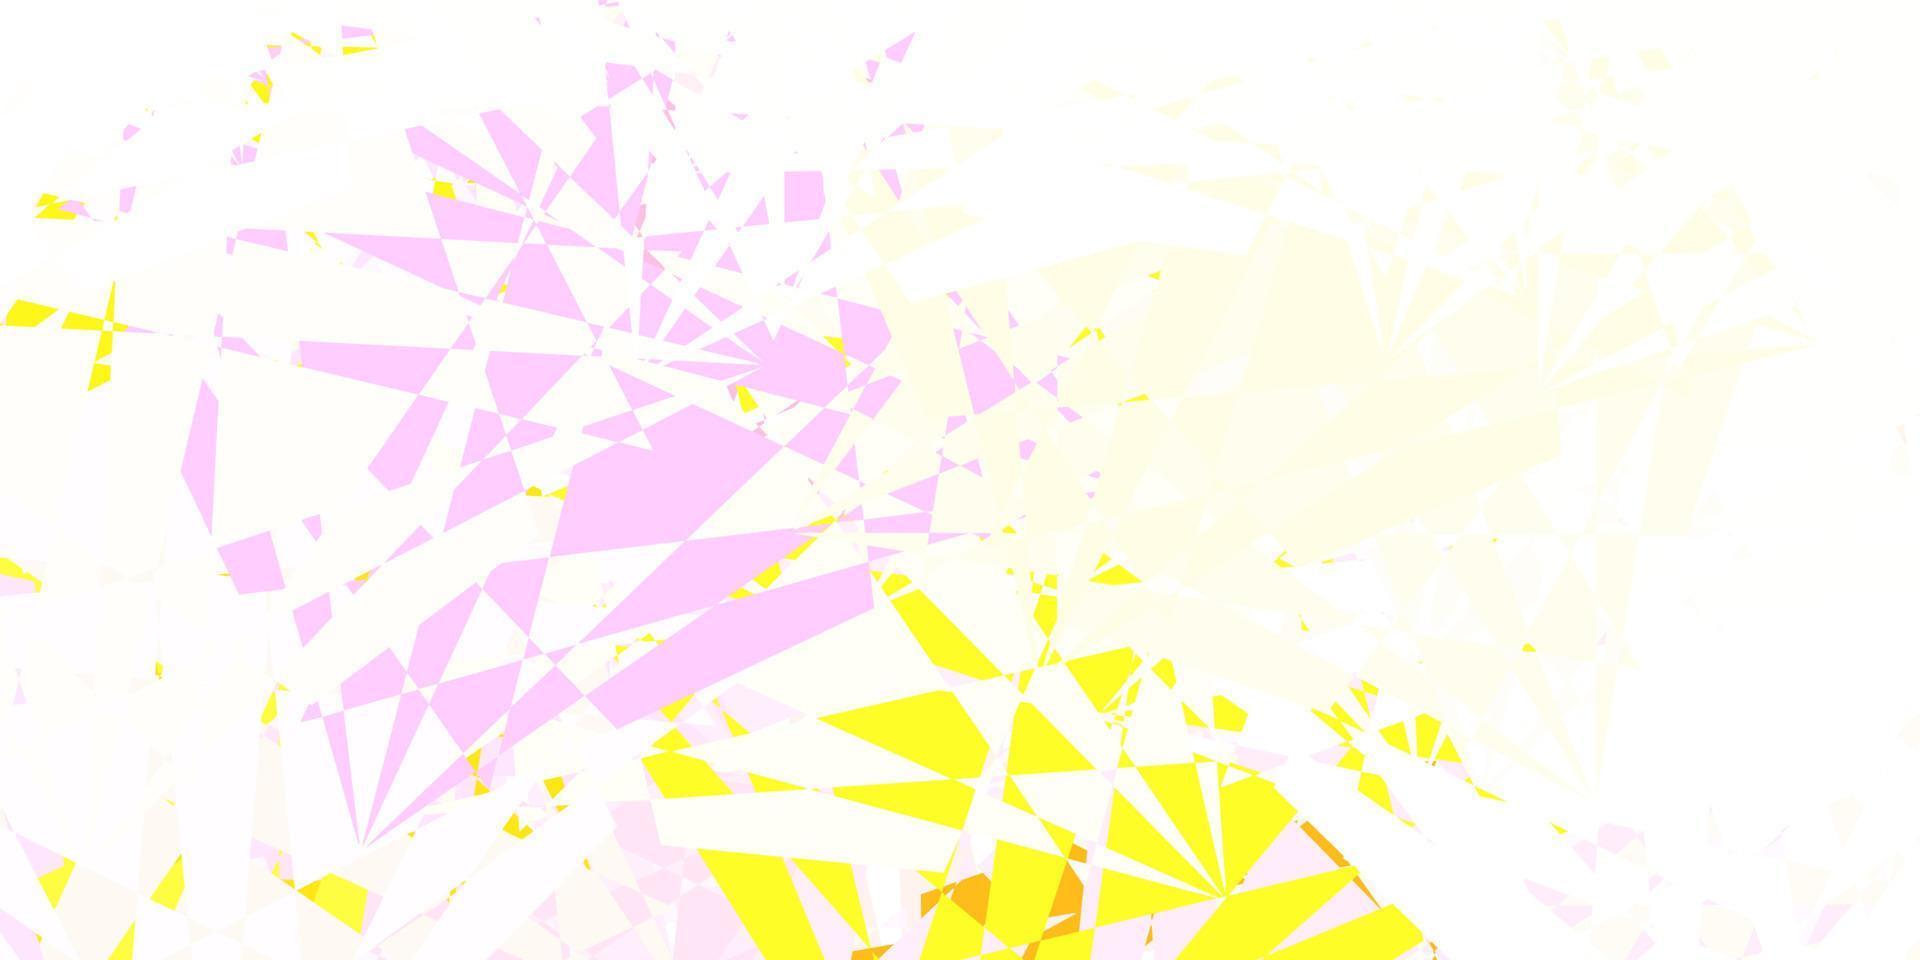 texture de vecteur rose clair, jaune avec des triangles aléatoires.